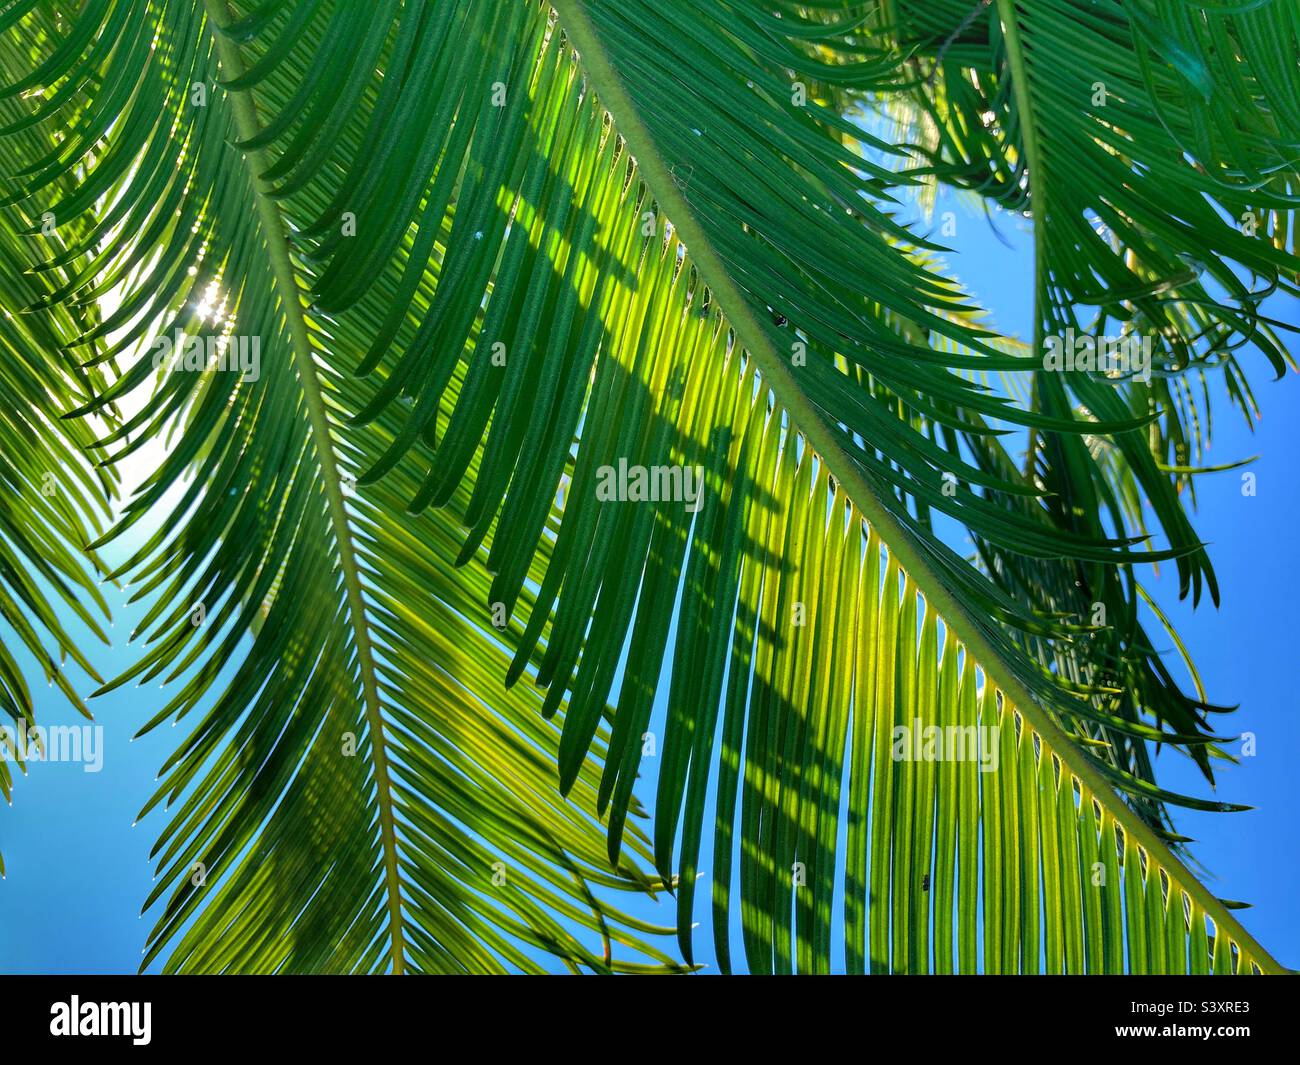 Grüne Wedel der Sago-Palme von unten gesehen, mit blauem Himmel oben Stockfoto